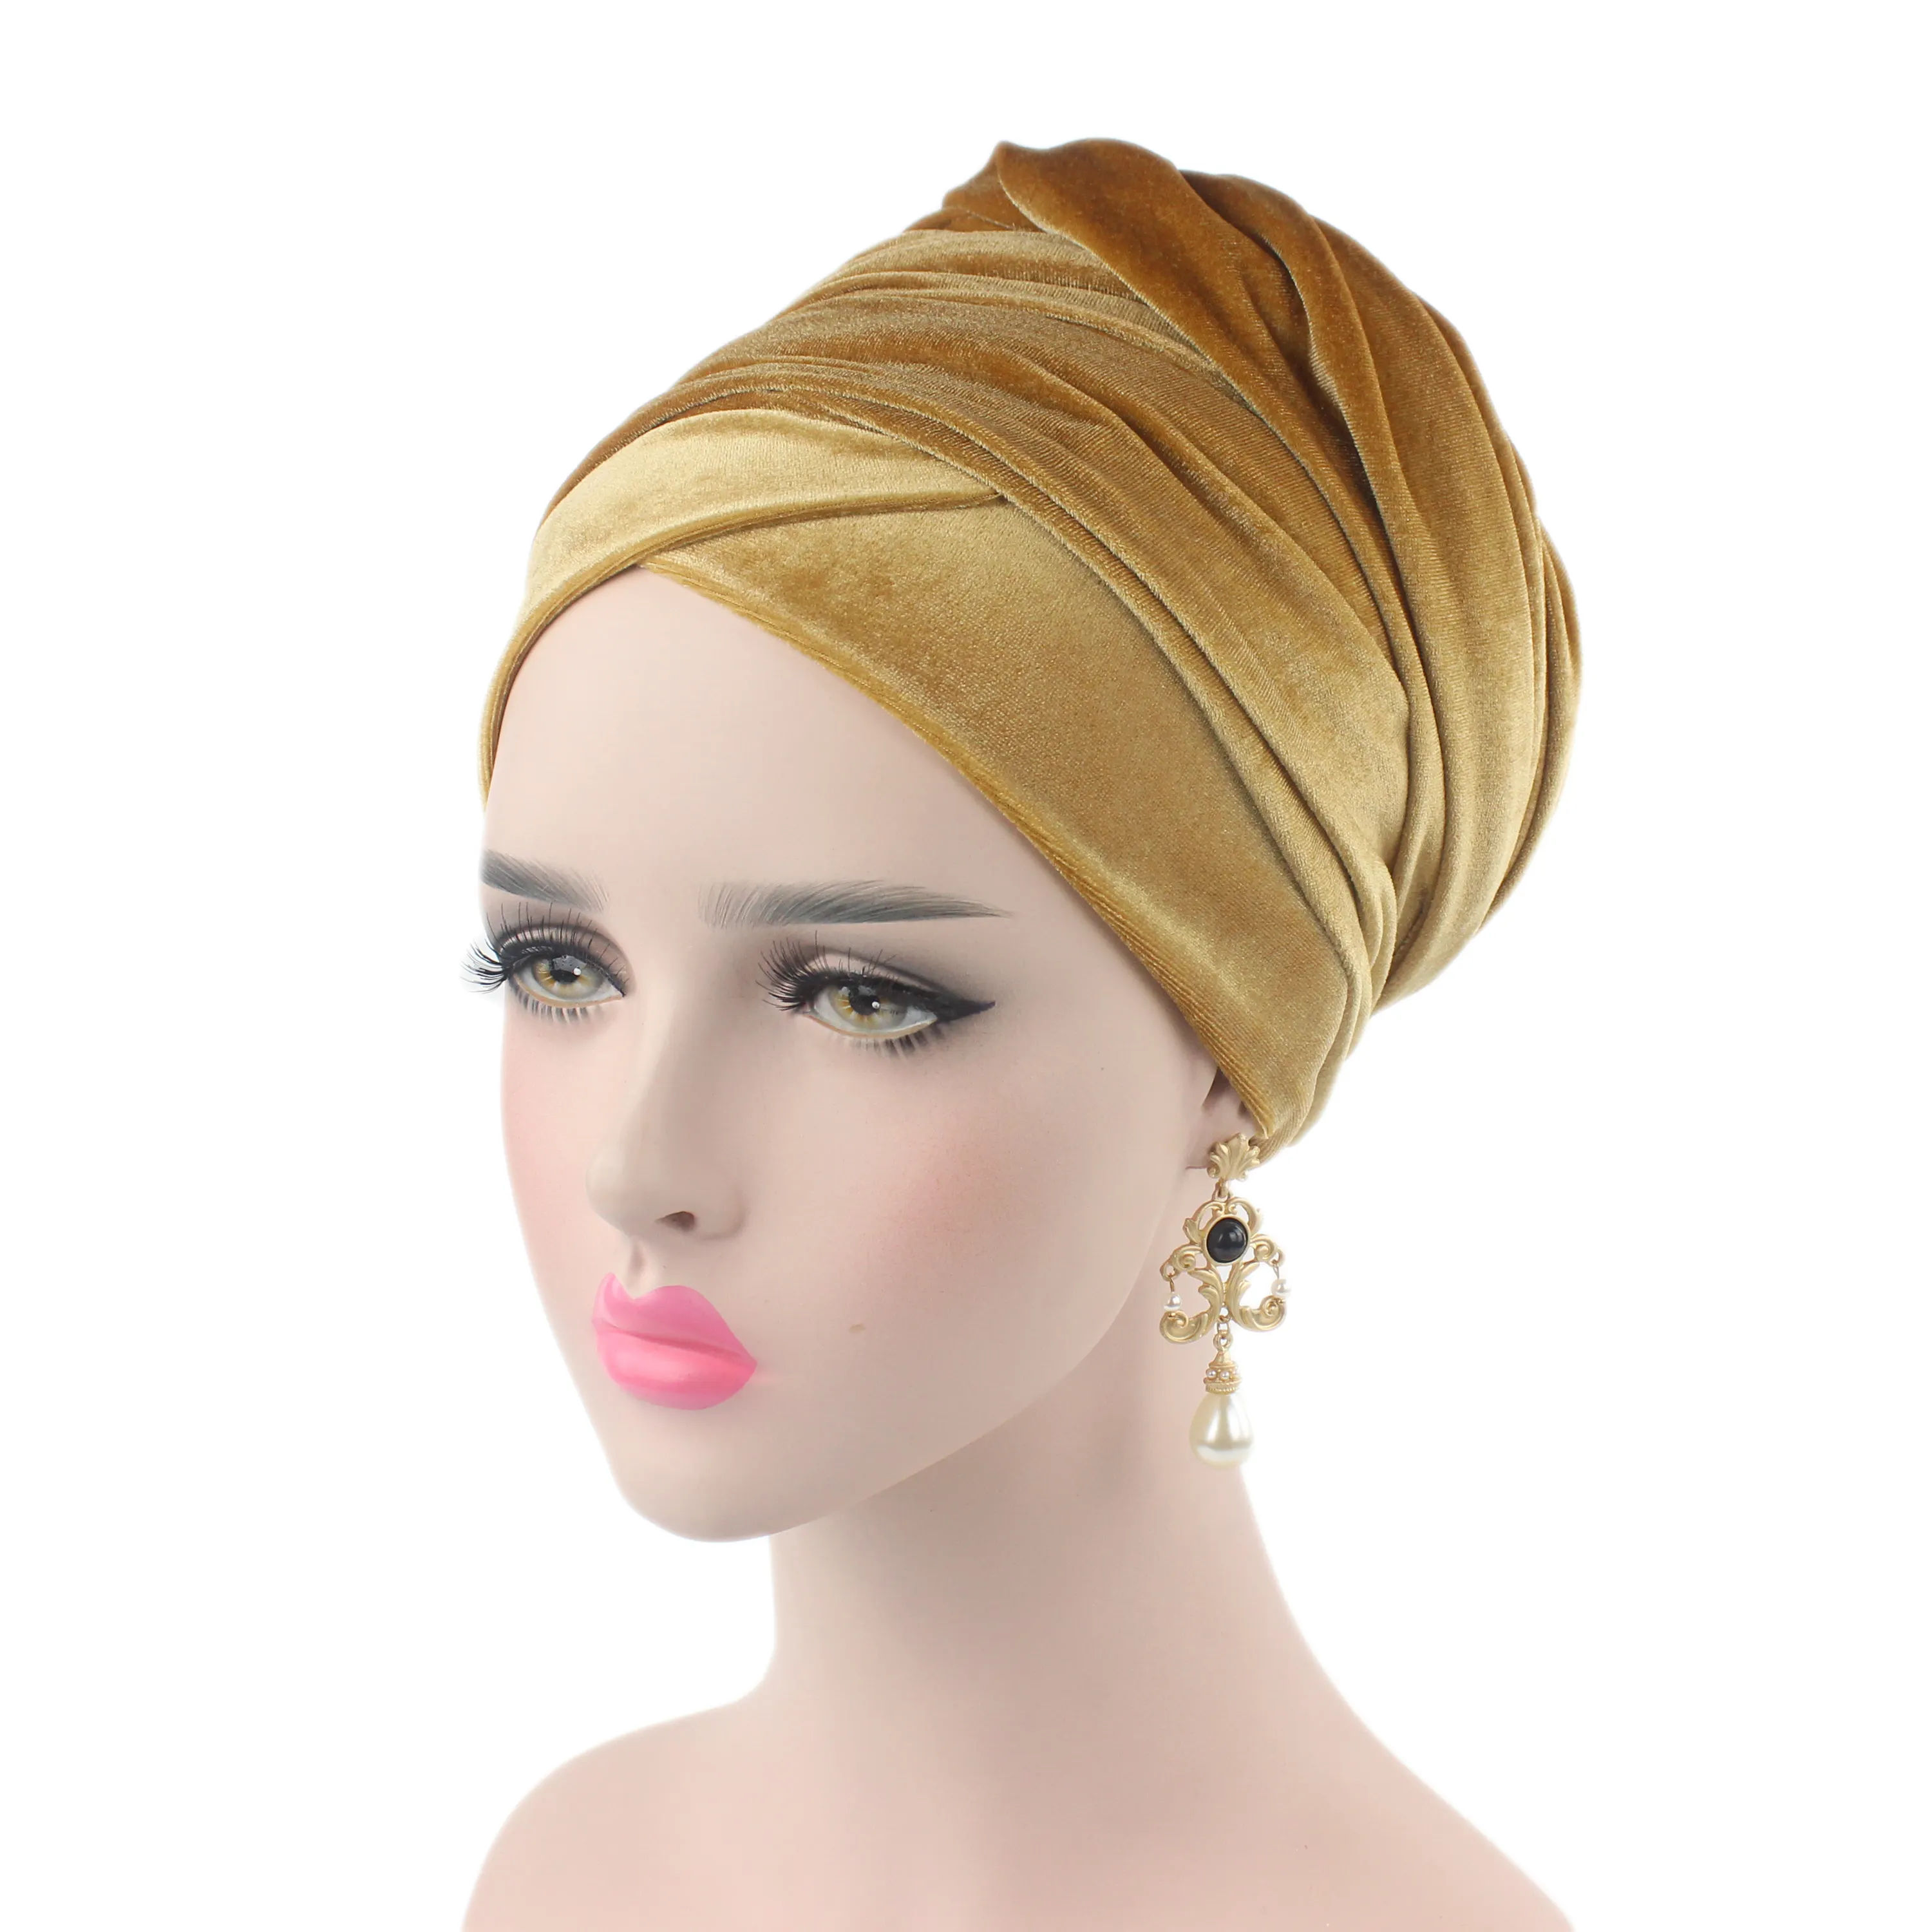 Хит продаж, удлиненный бархатный длинный платок, тюрбан, шапка в африканском стиле, однотонная повязка на голову для взрослых